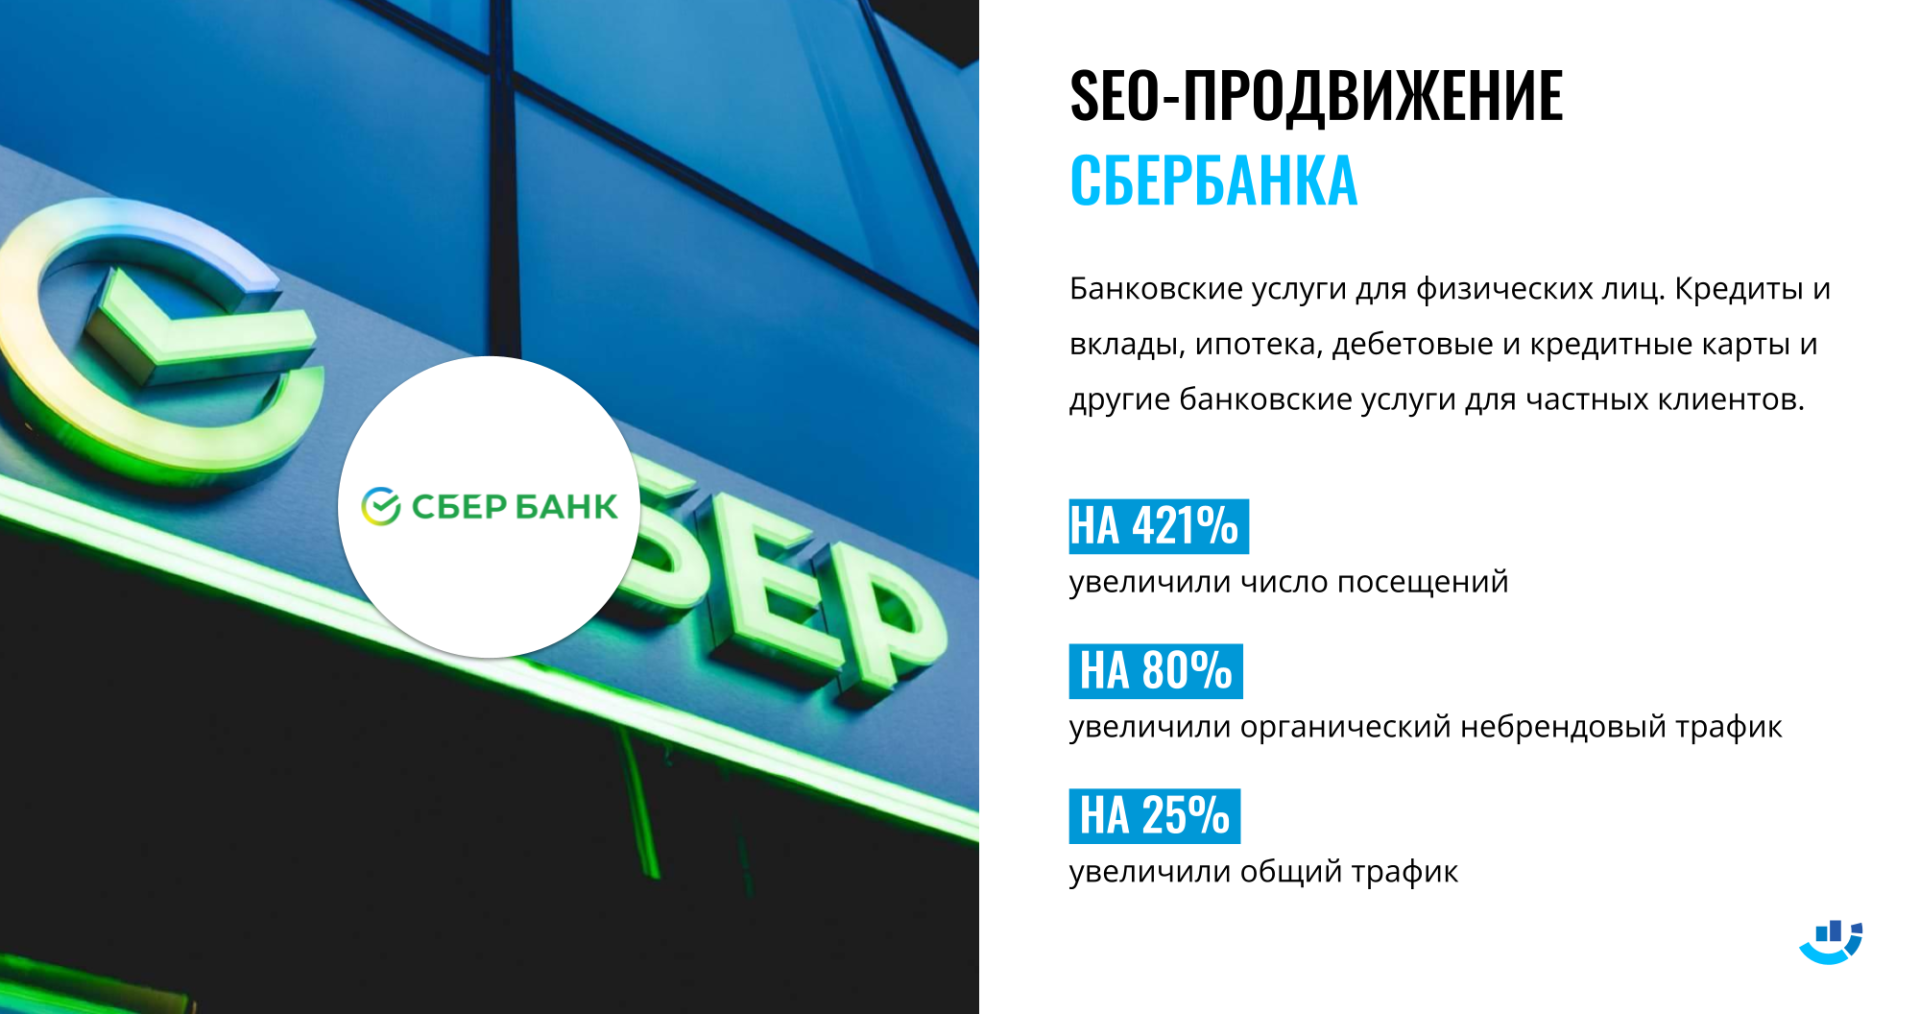 Кейс Продвижение сайта для Сбербанка. Ниша «Банки и финансовые учреждения»